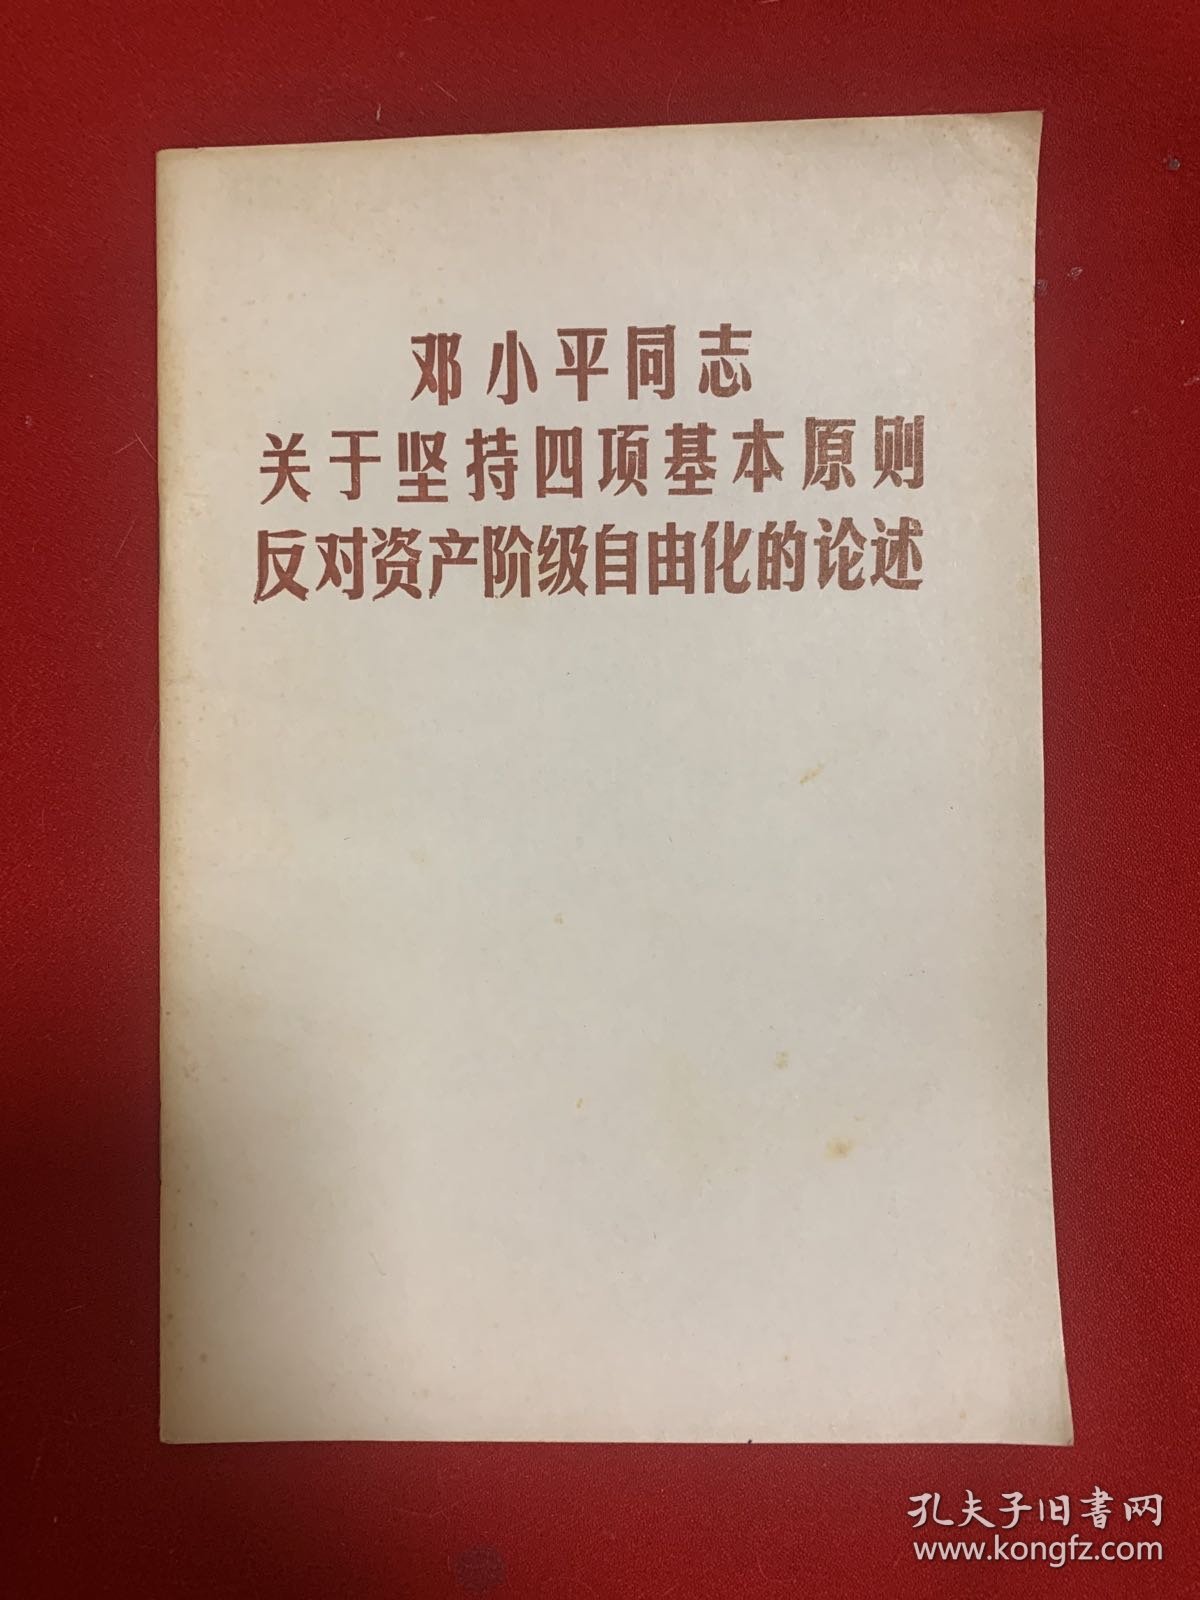 邓小平同志关于坚持四项基本原则反对资产阶级自由化的论述